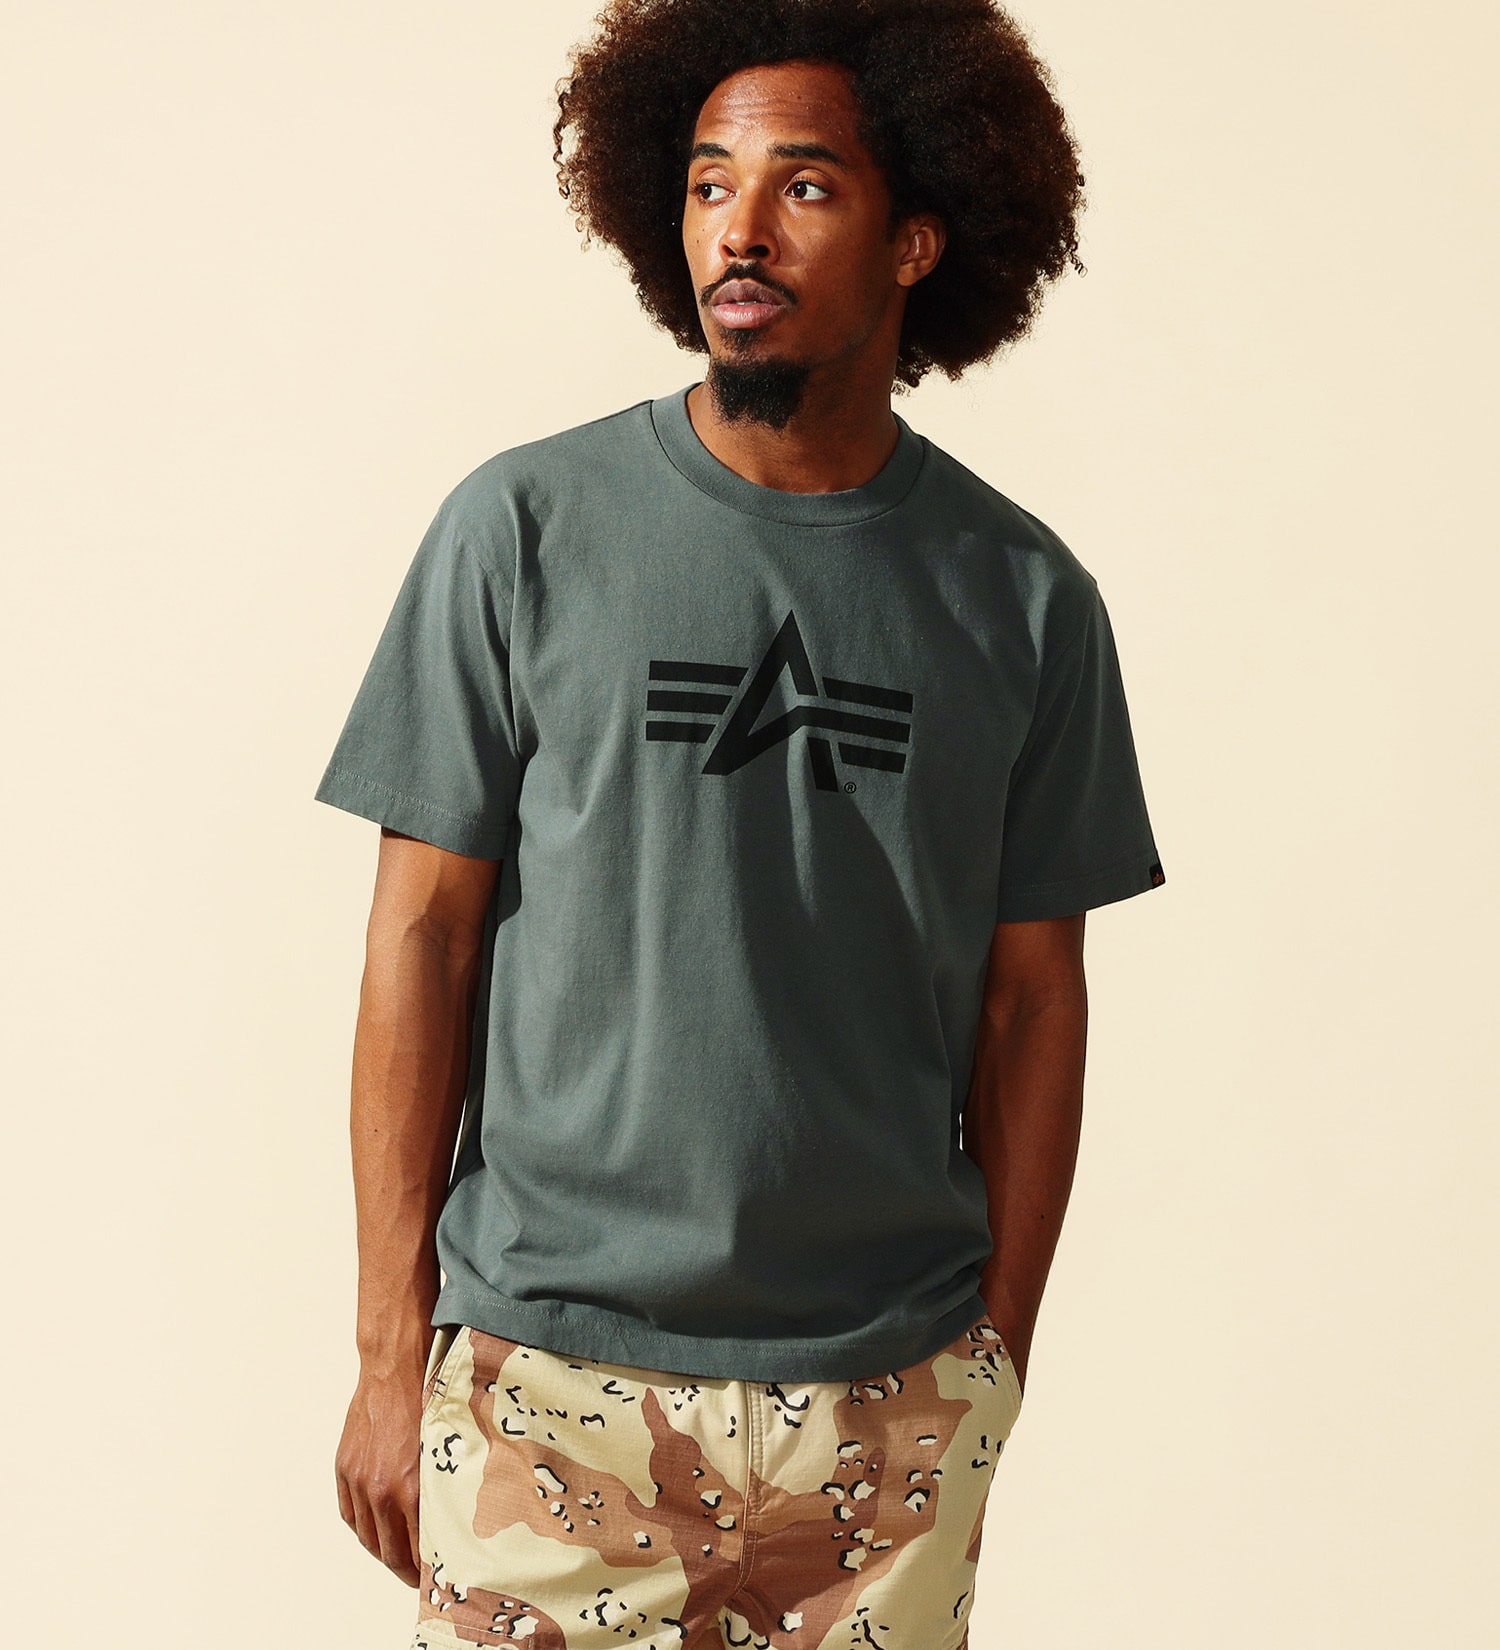 ALPHA(アルファ)のAマークロゴプリントTシャツ 半袖|トップス/Tシャツ/カットソー/メンズ|グレー